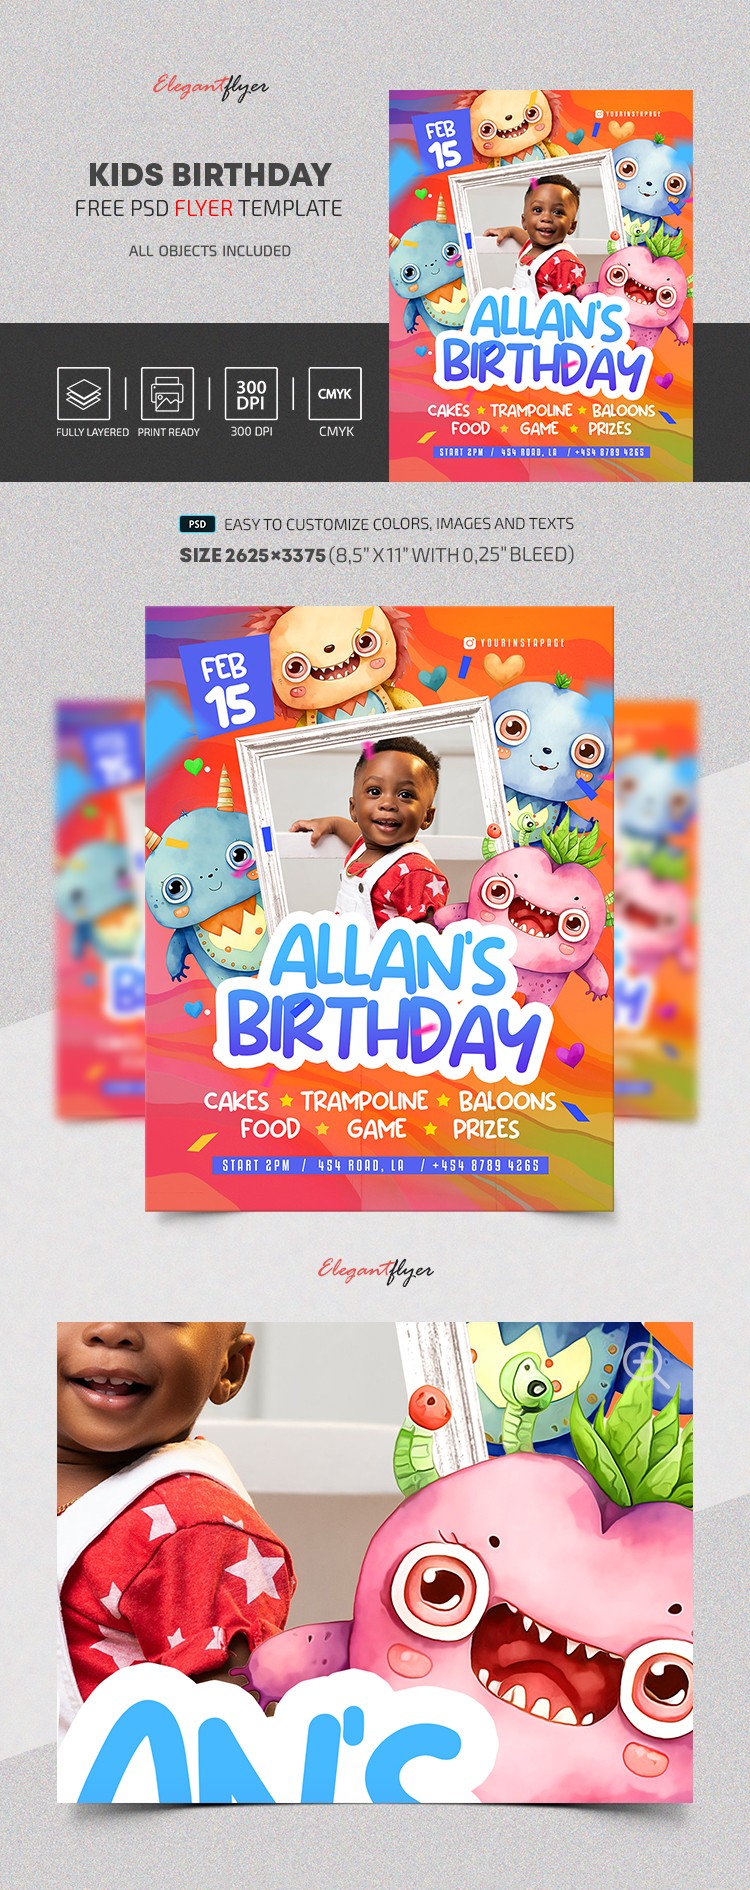 Kids Birthday Flyer by ElegantFlyer